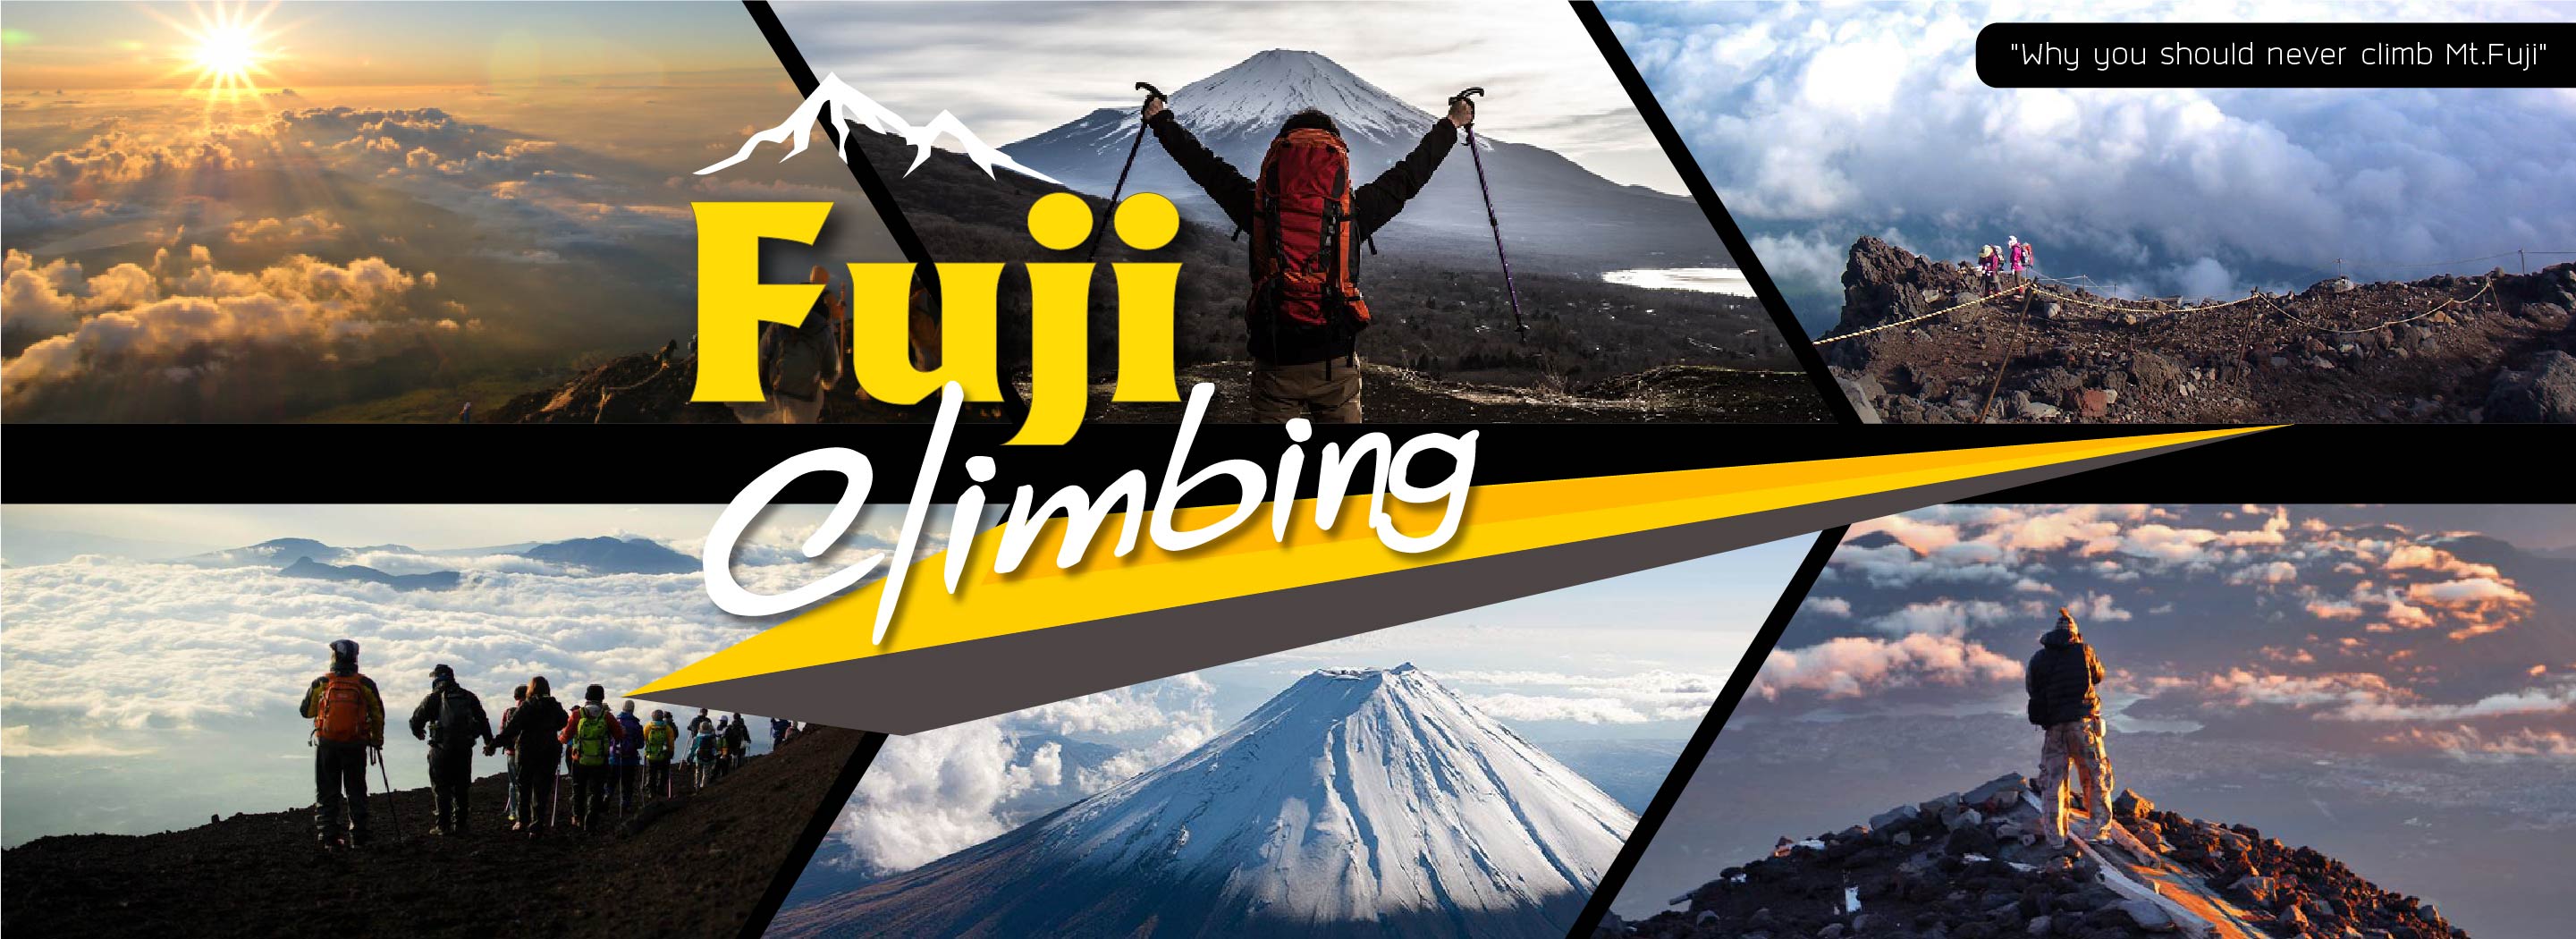 ปีนฟูจิ, เที่ยวภูเขาไฟฟูจิ, Climbing, Mt.Fuji Climbing Tour, แพคเกจปีนฟูจิ, ปีนภูเขาไฟฟูจิ, Mount Fuji Climbing